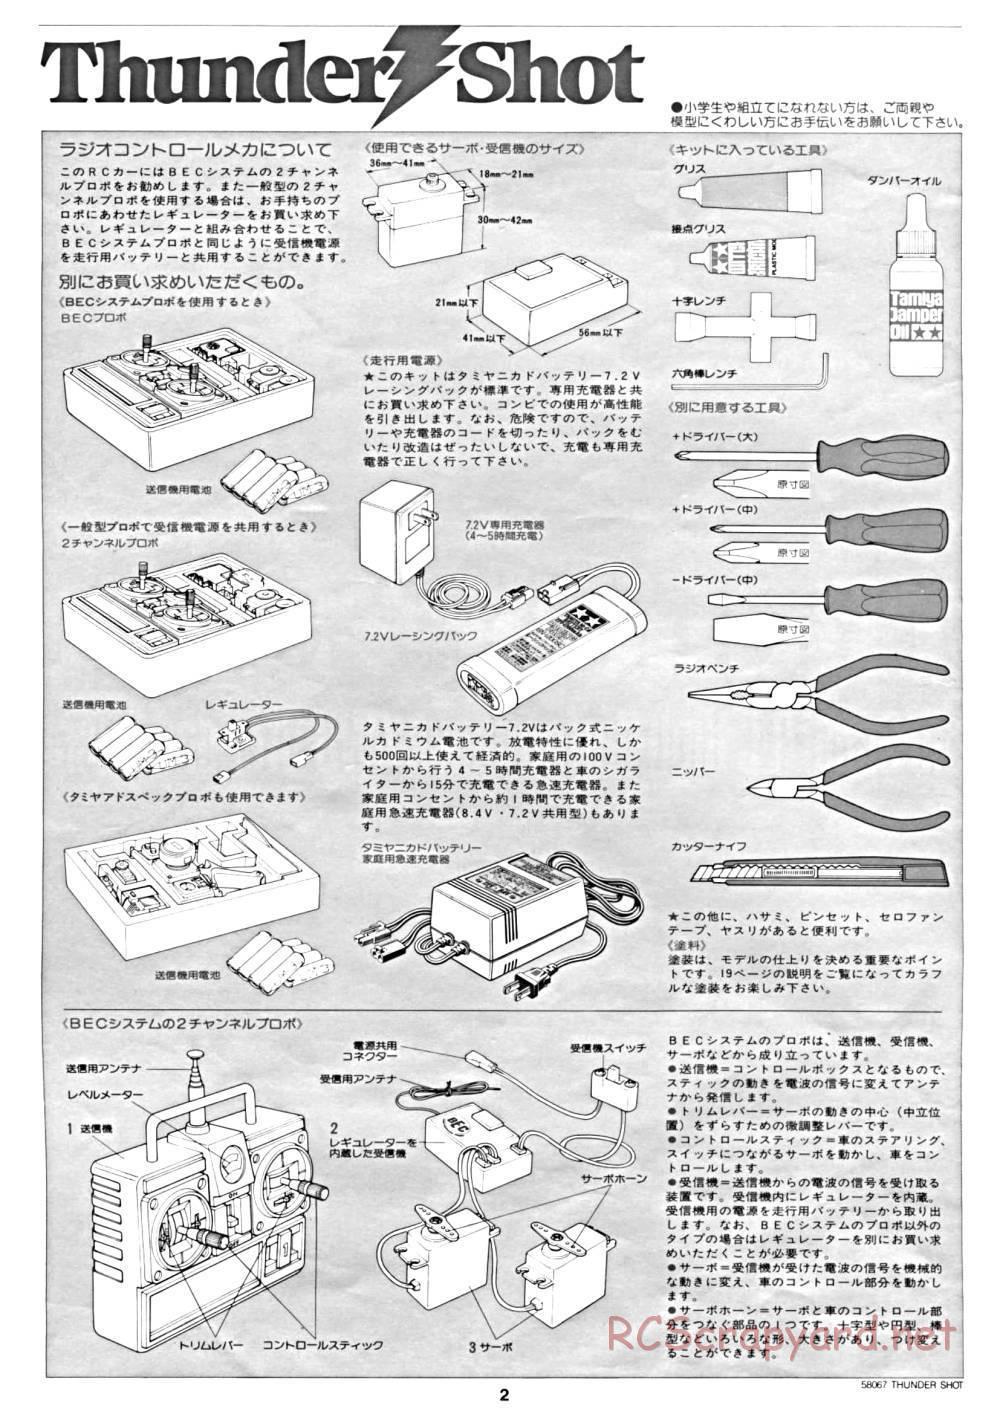 Tamiya - Thunder Shot - 58067 - Manual - Page 2